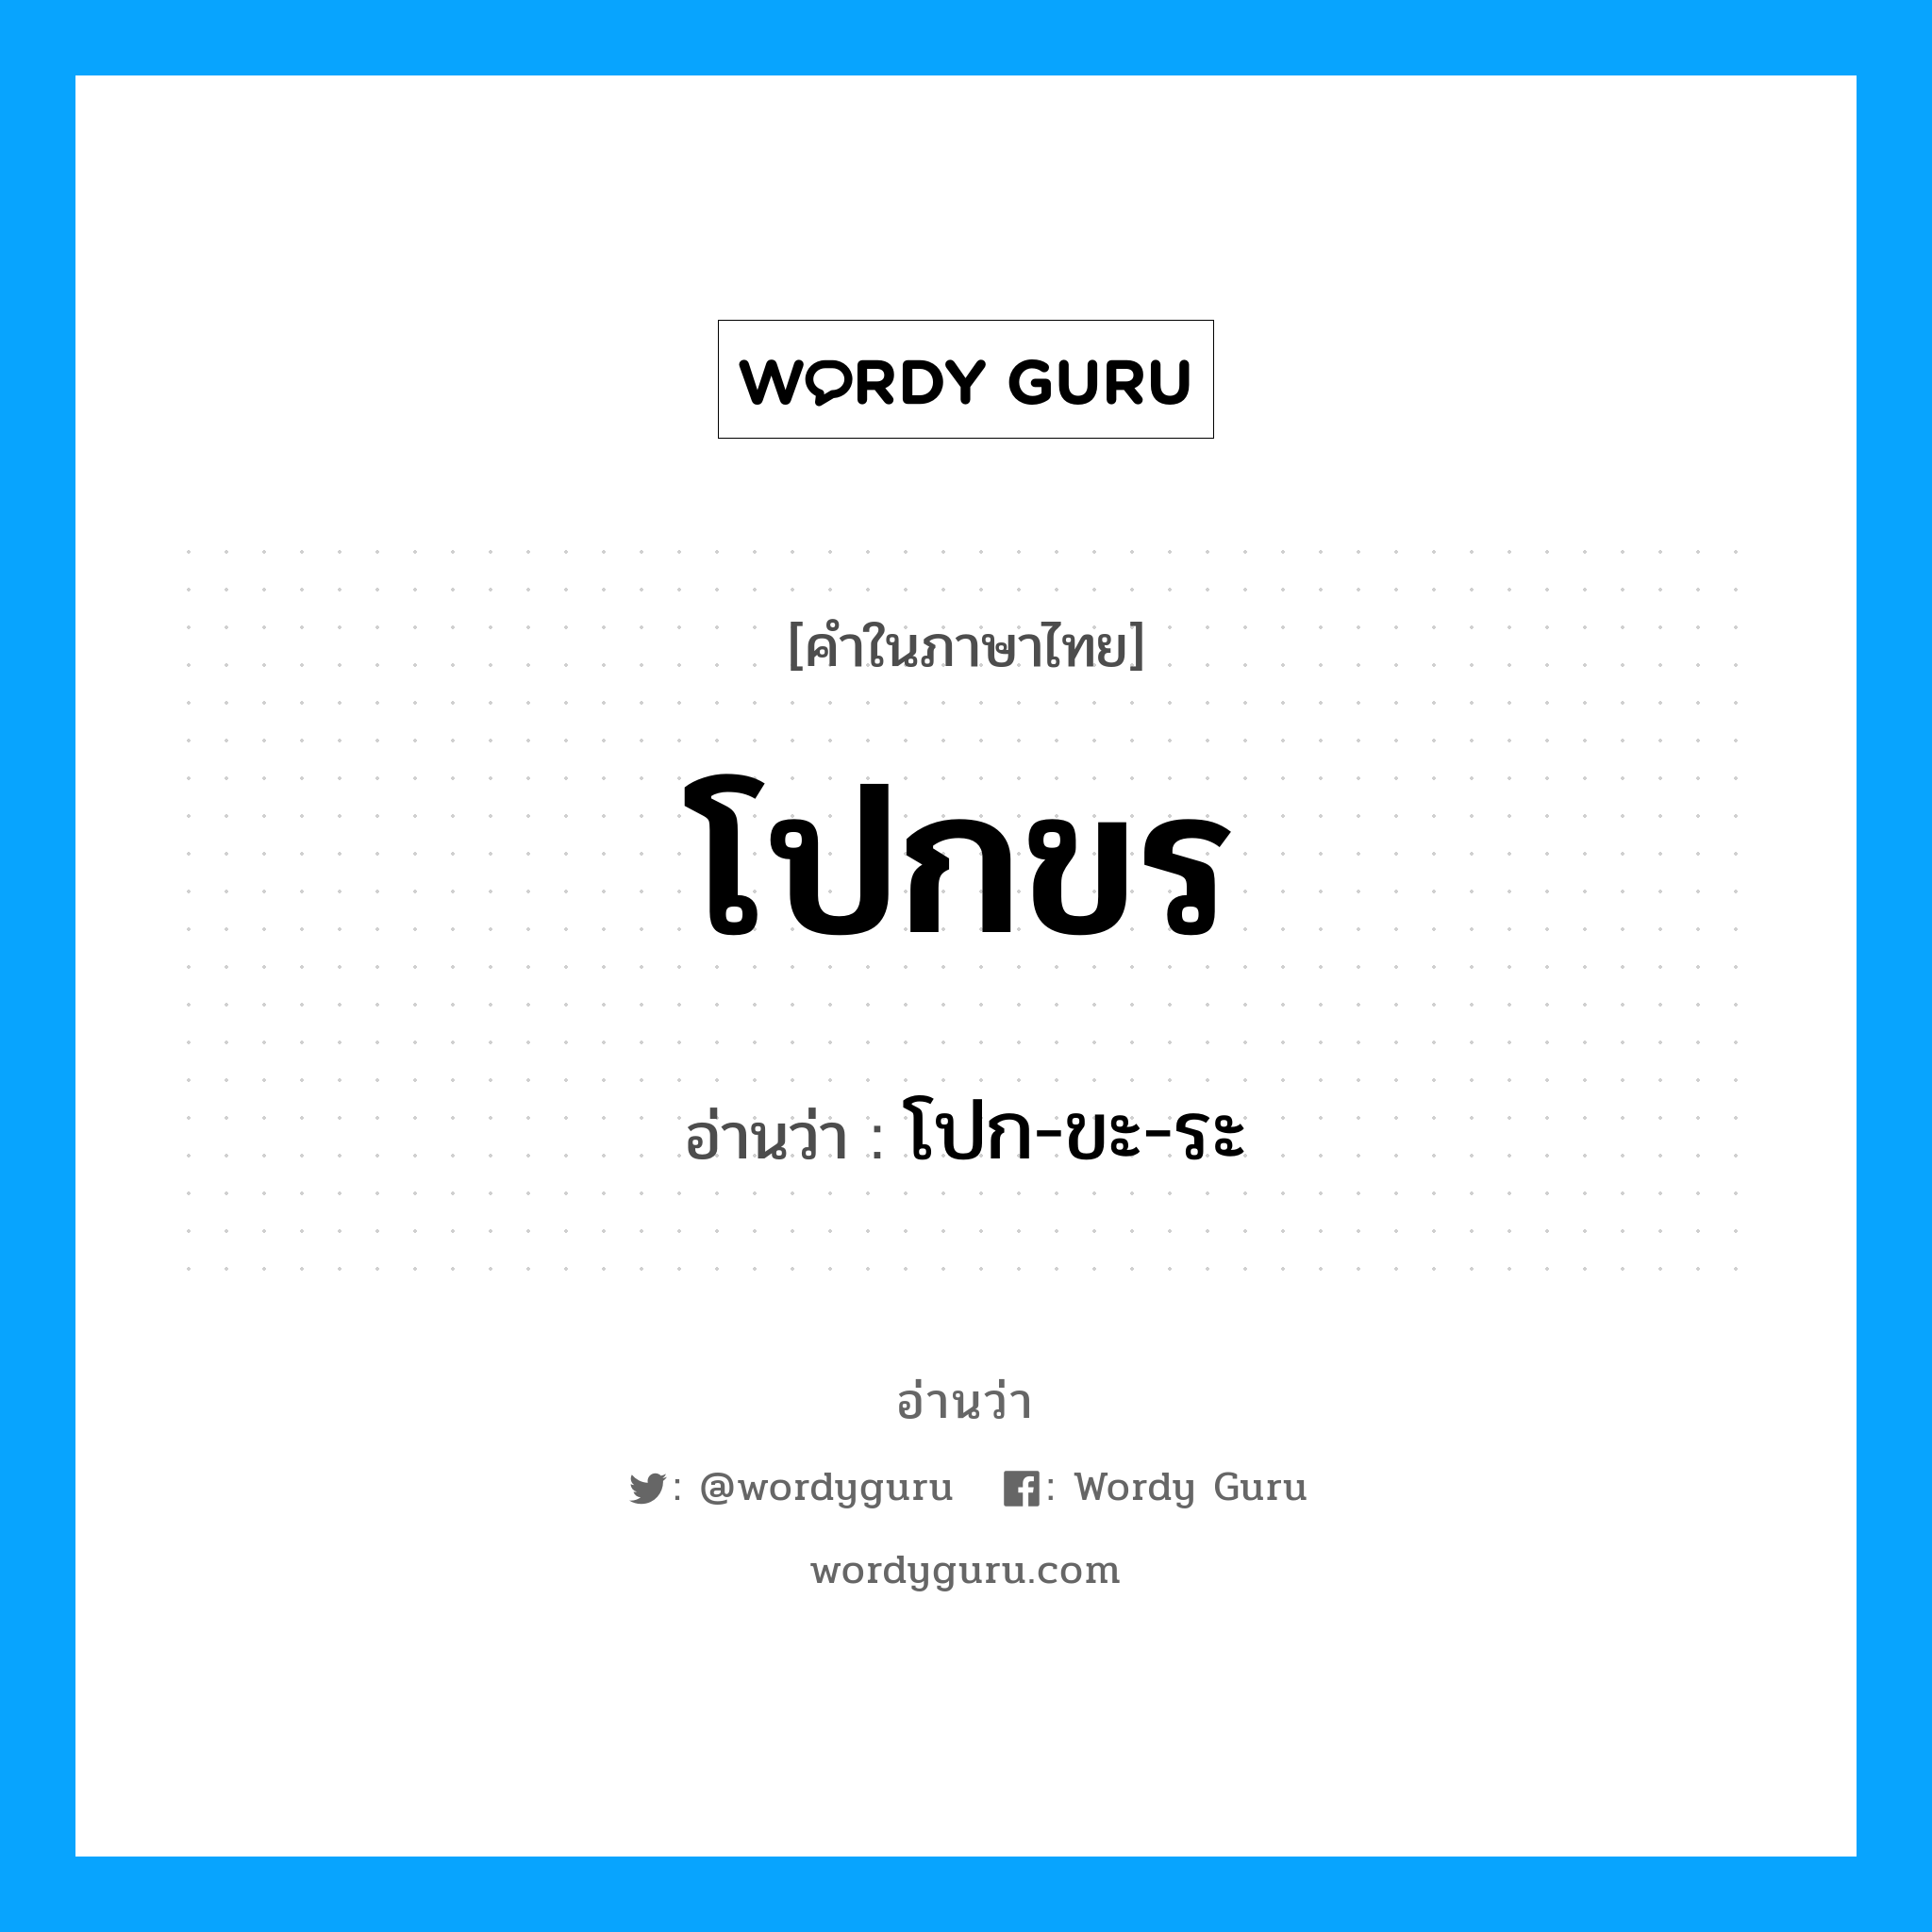 โปก-ขะ-ระ เป็นคำอ่านของคำไหน?, คำในภาษาไทย โปก-ขะ-ระ อ่านว่า โปกขร